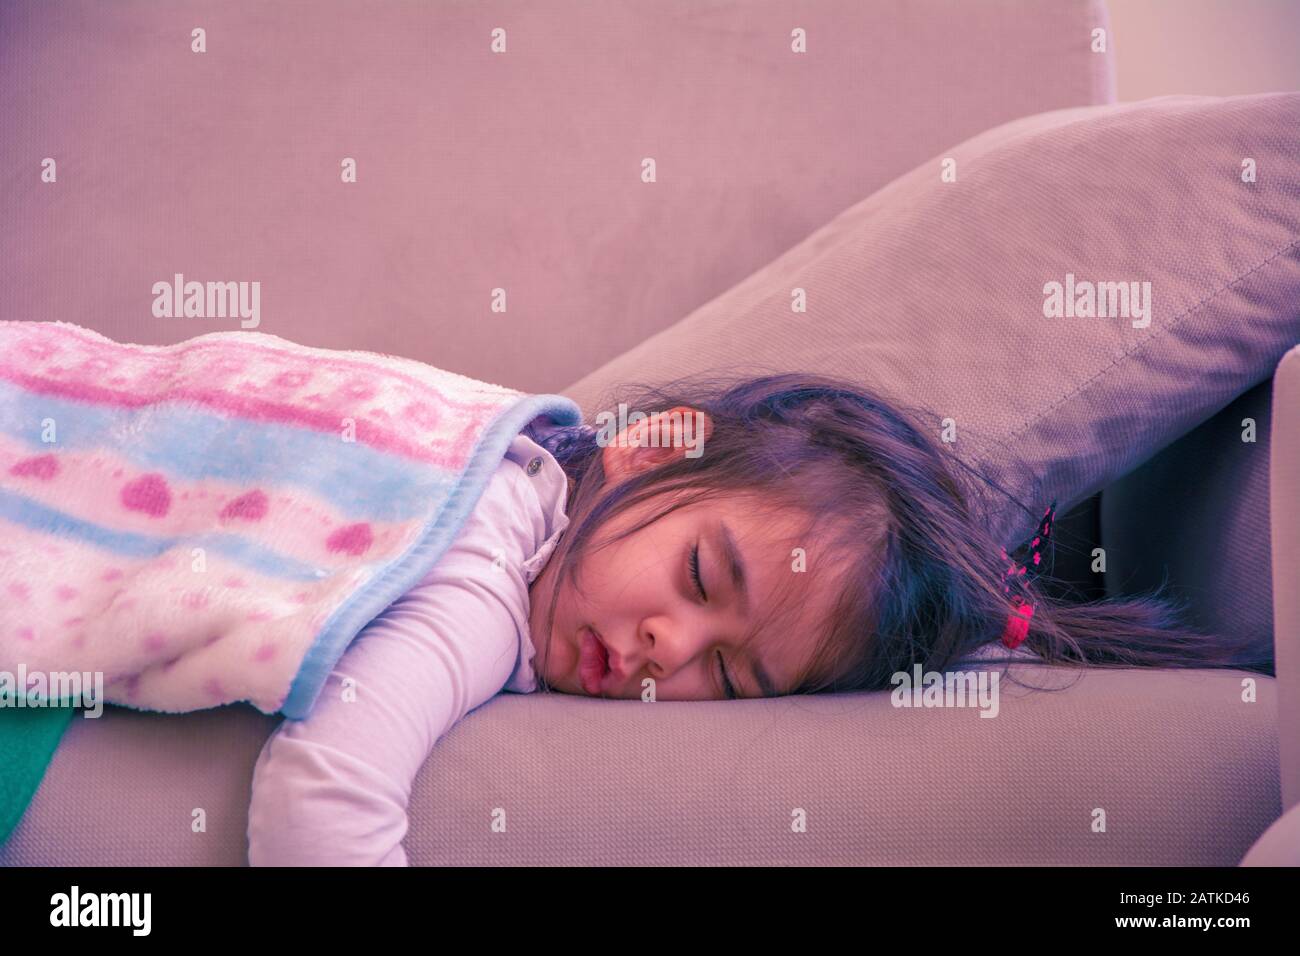 petite fille de 3 ans dormant sur un canapé Banque D'Images